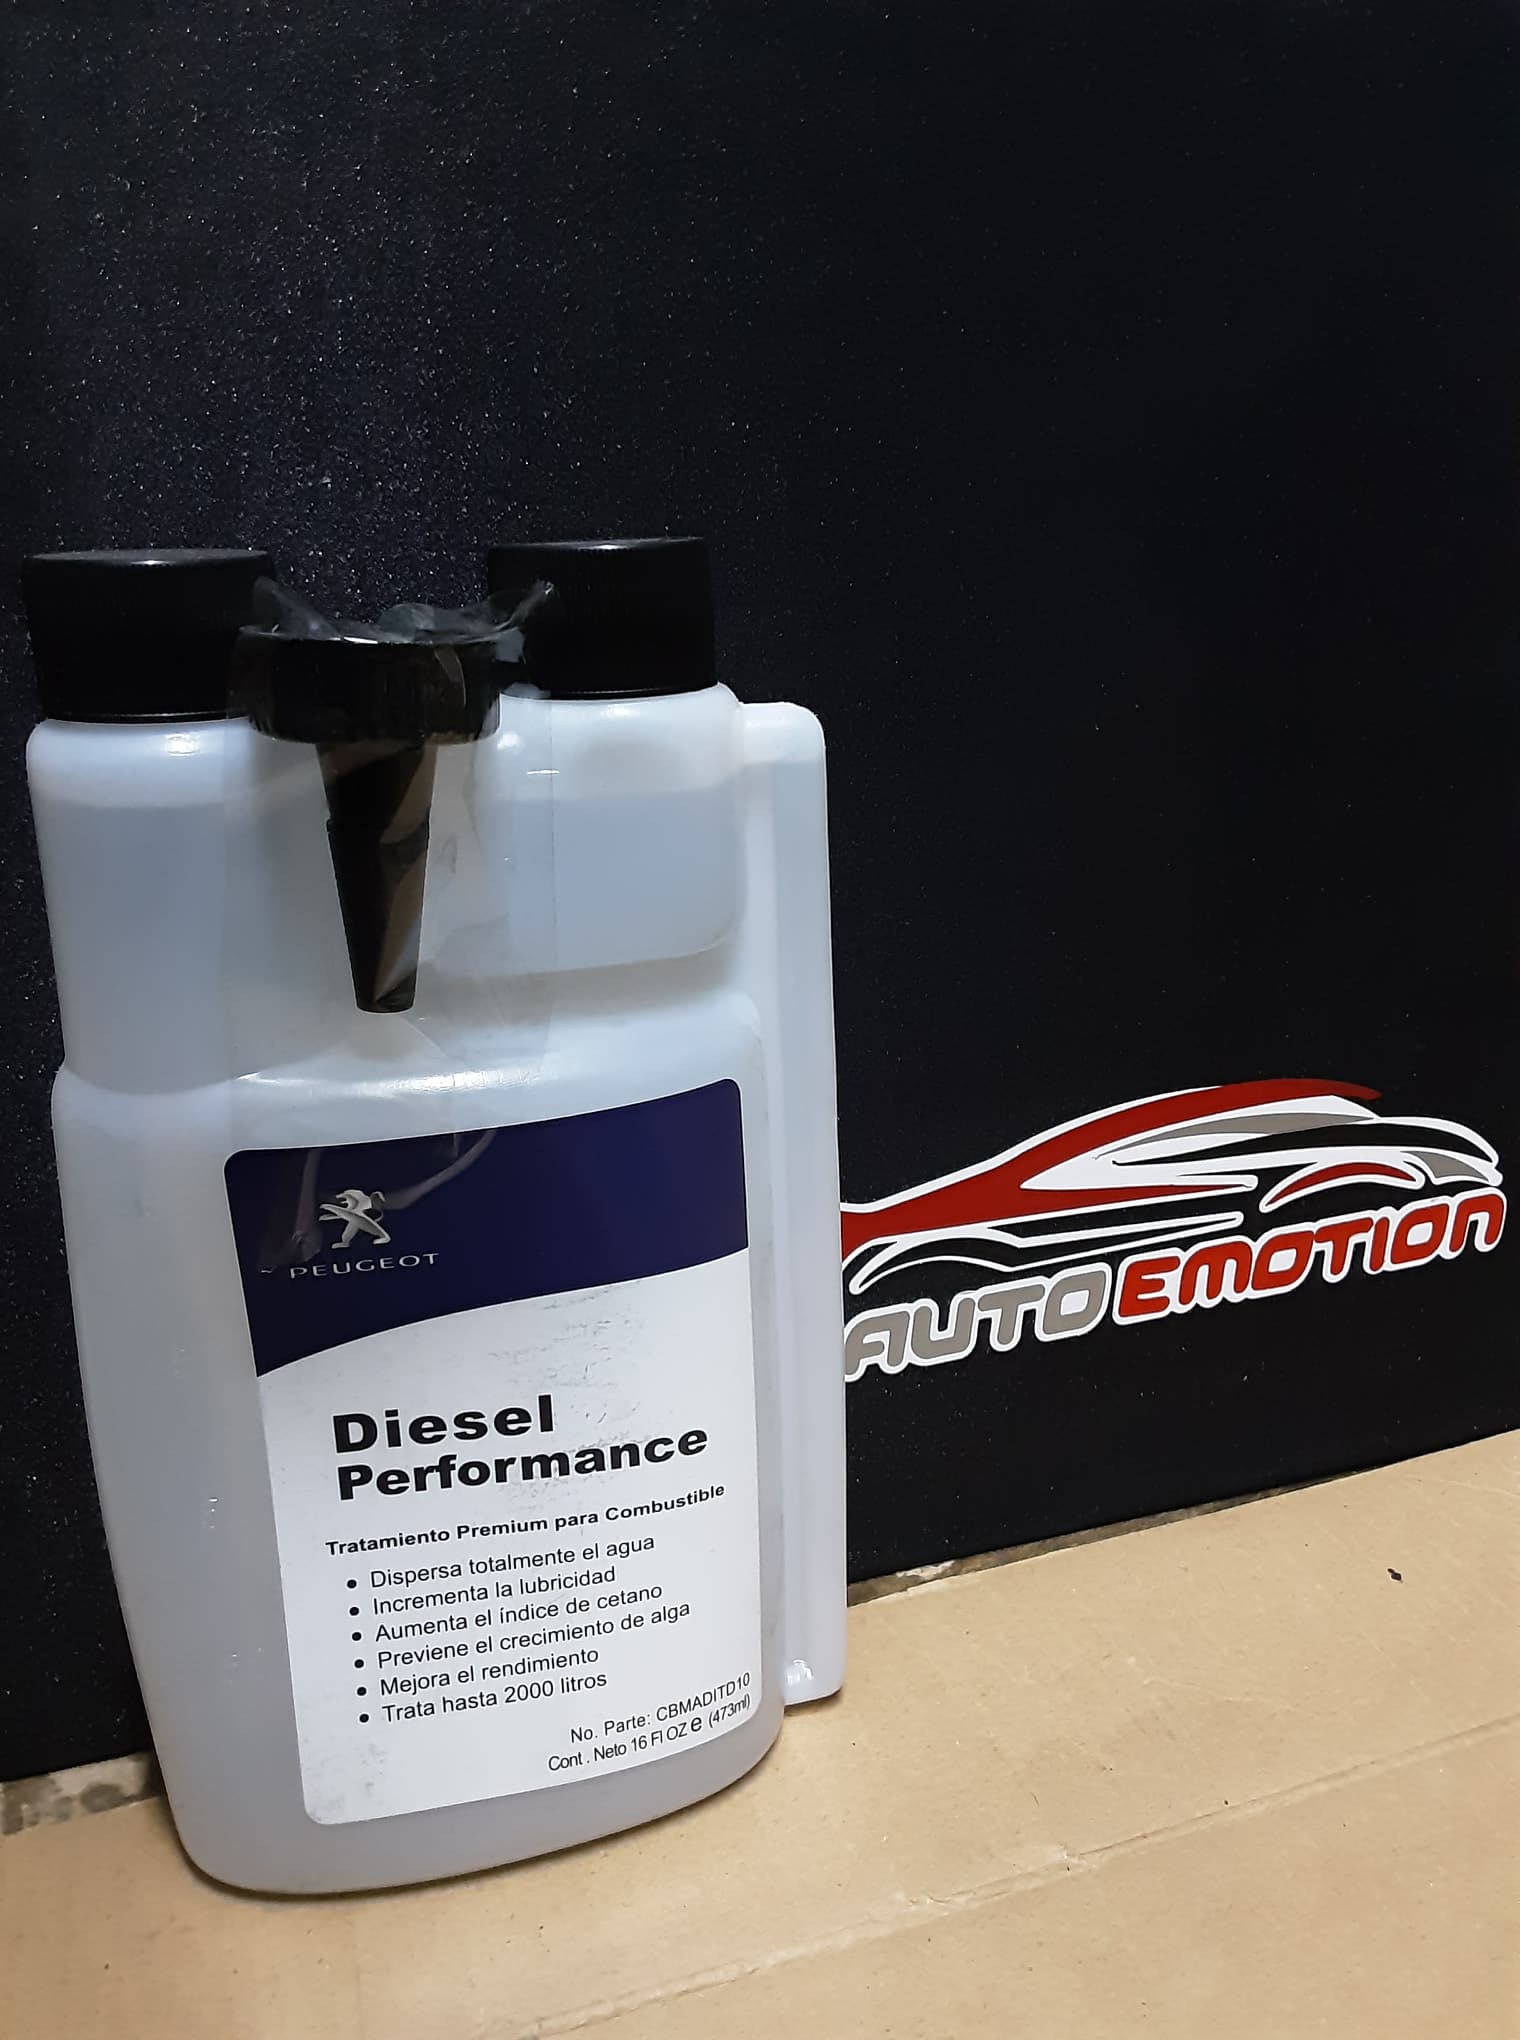 Diesel performance